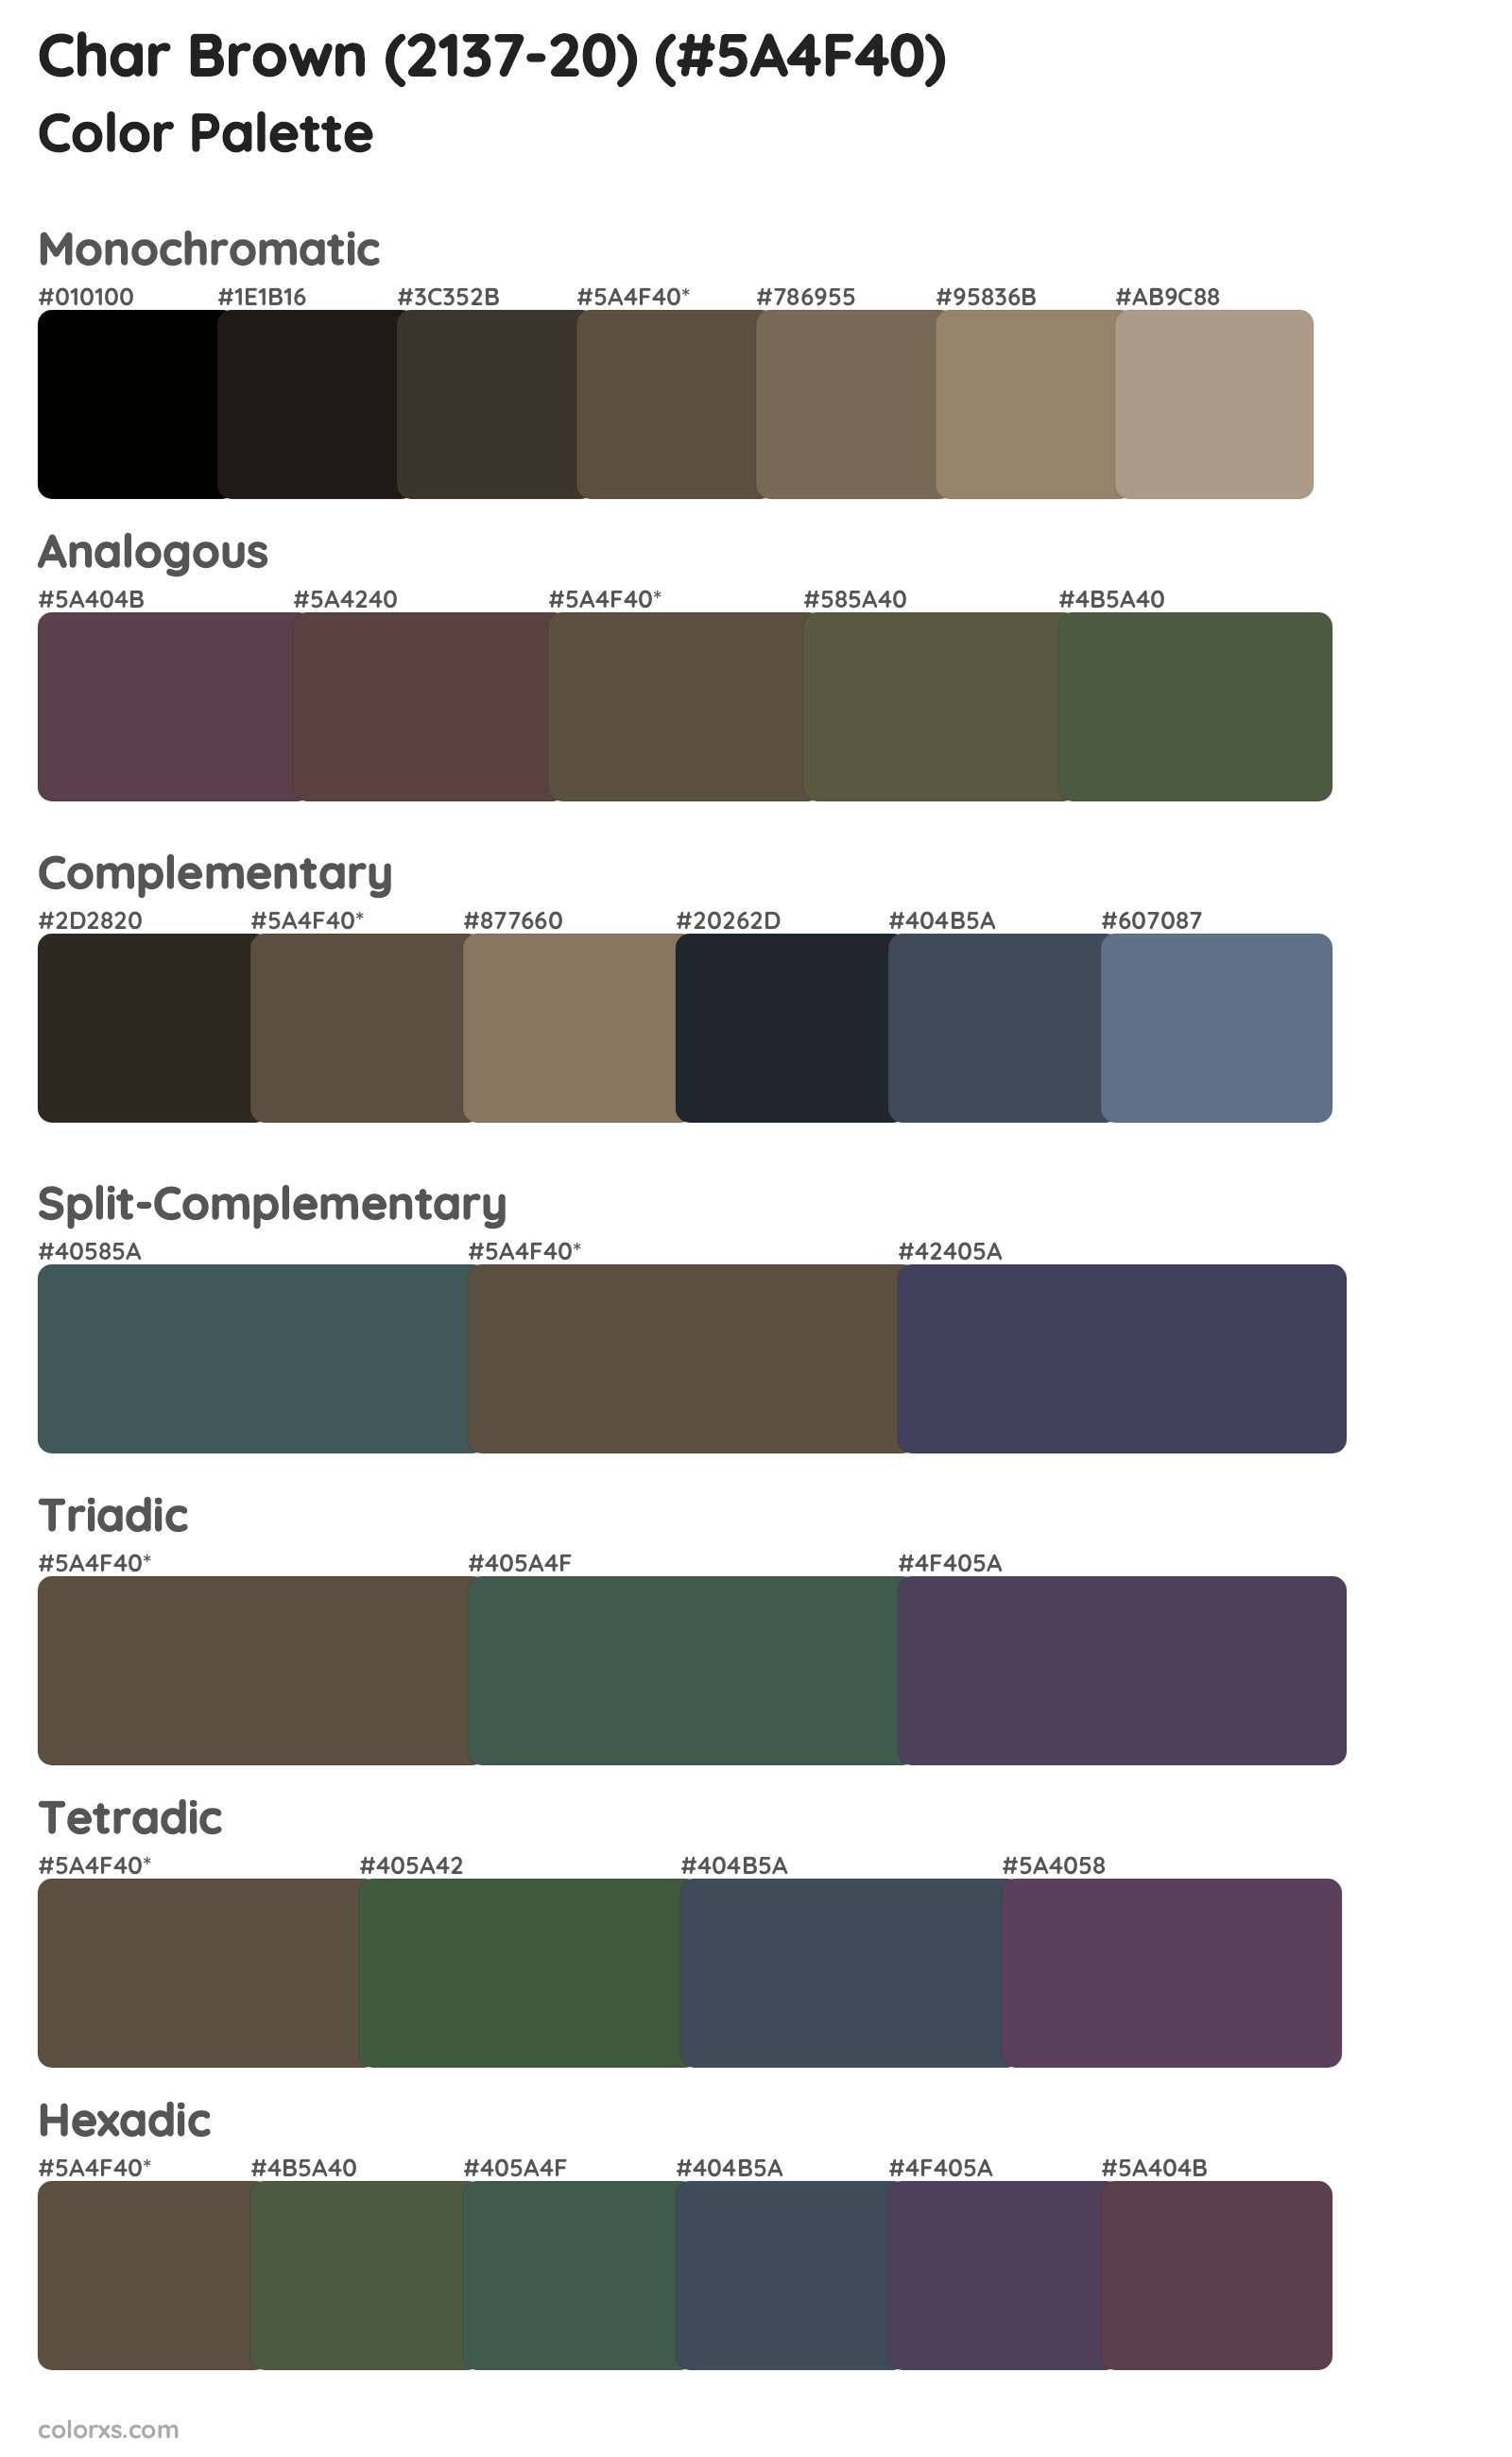 Char Brown (2137-20) Color Scheme Palettes